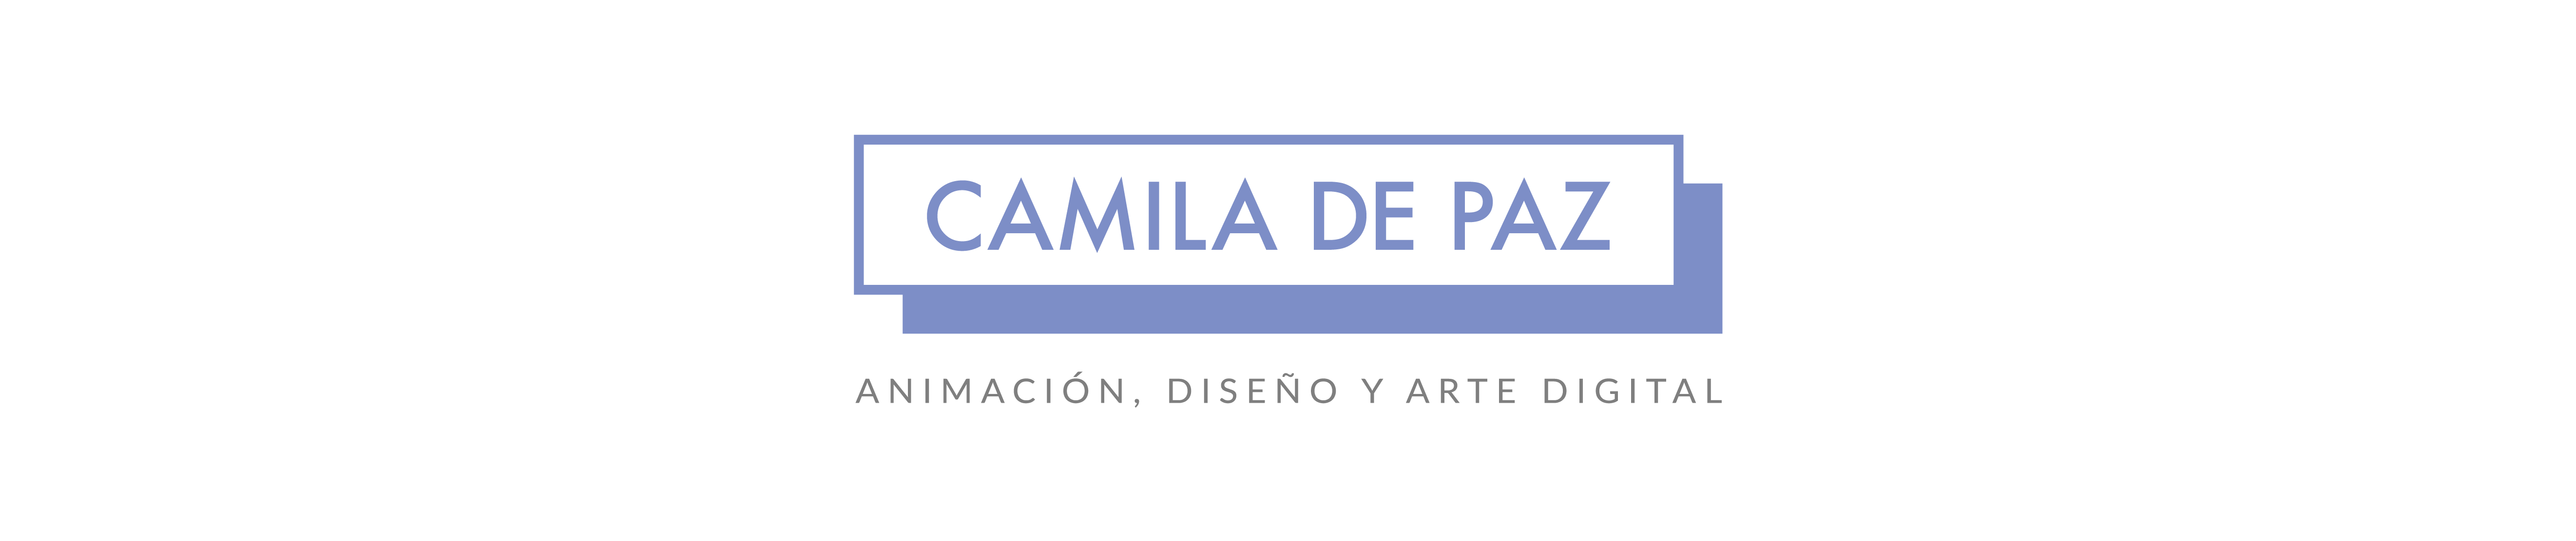 Camila de Paz's profile banner